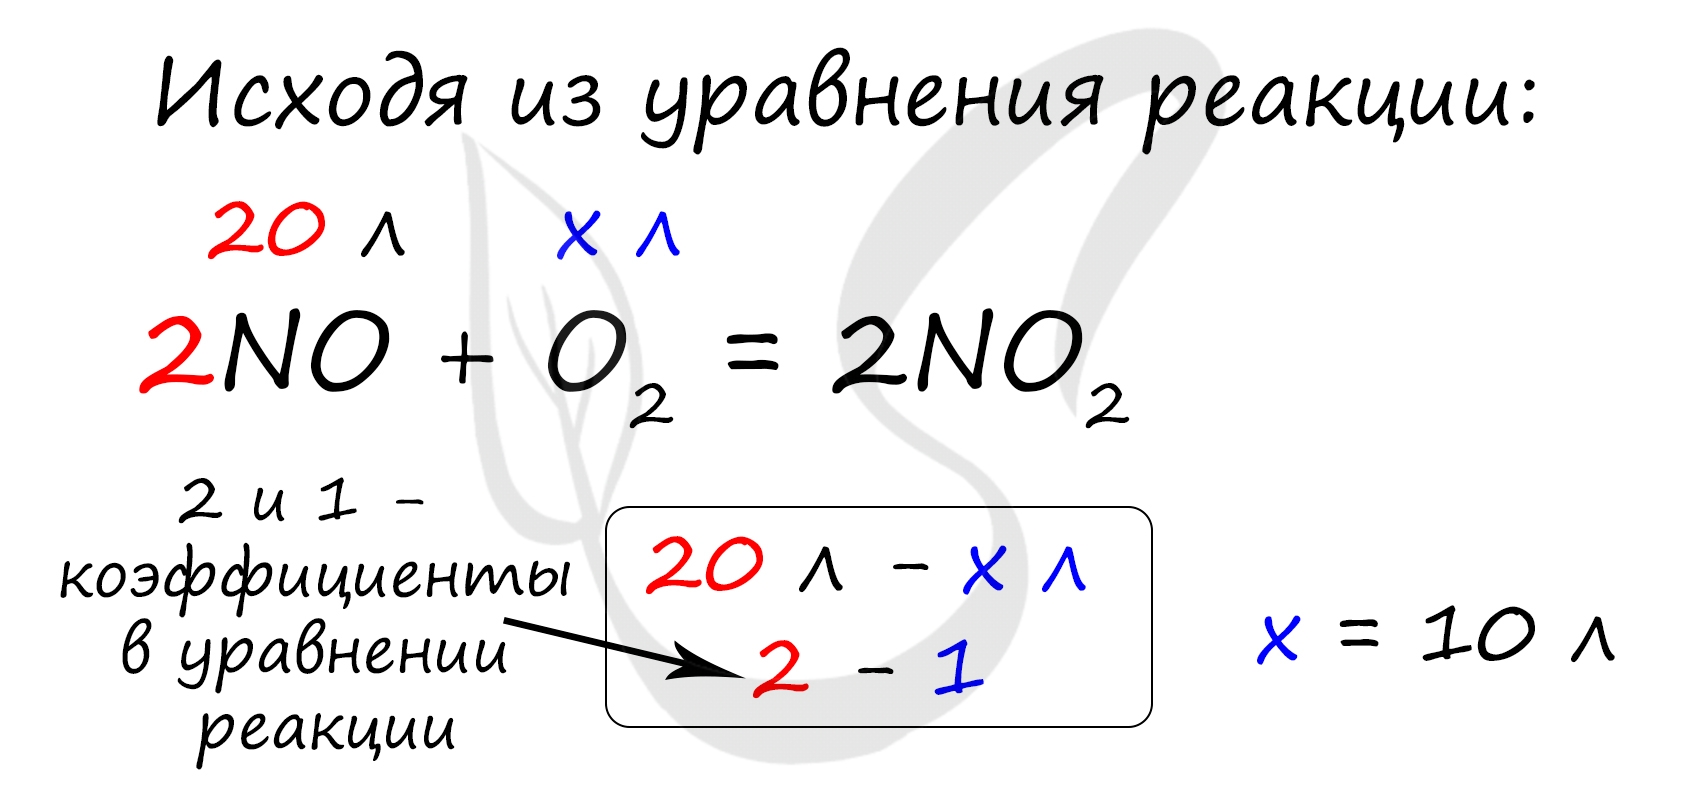 Расчет объема кислорода, который не вступит в реакцию с 20 л оксида азота(II)